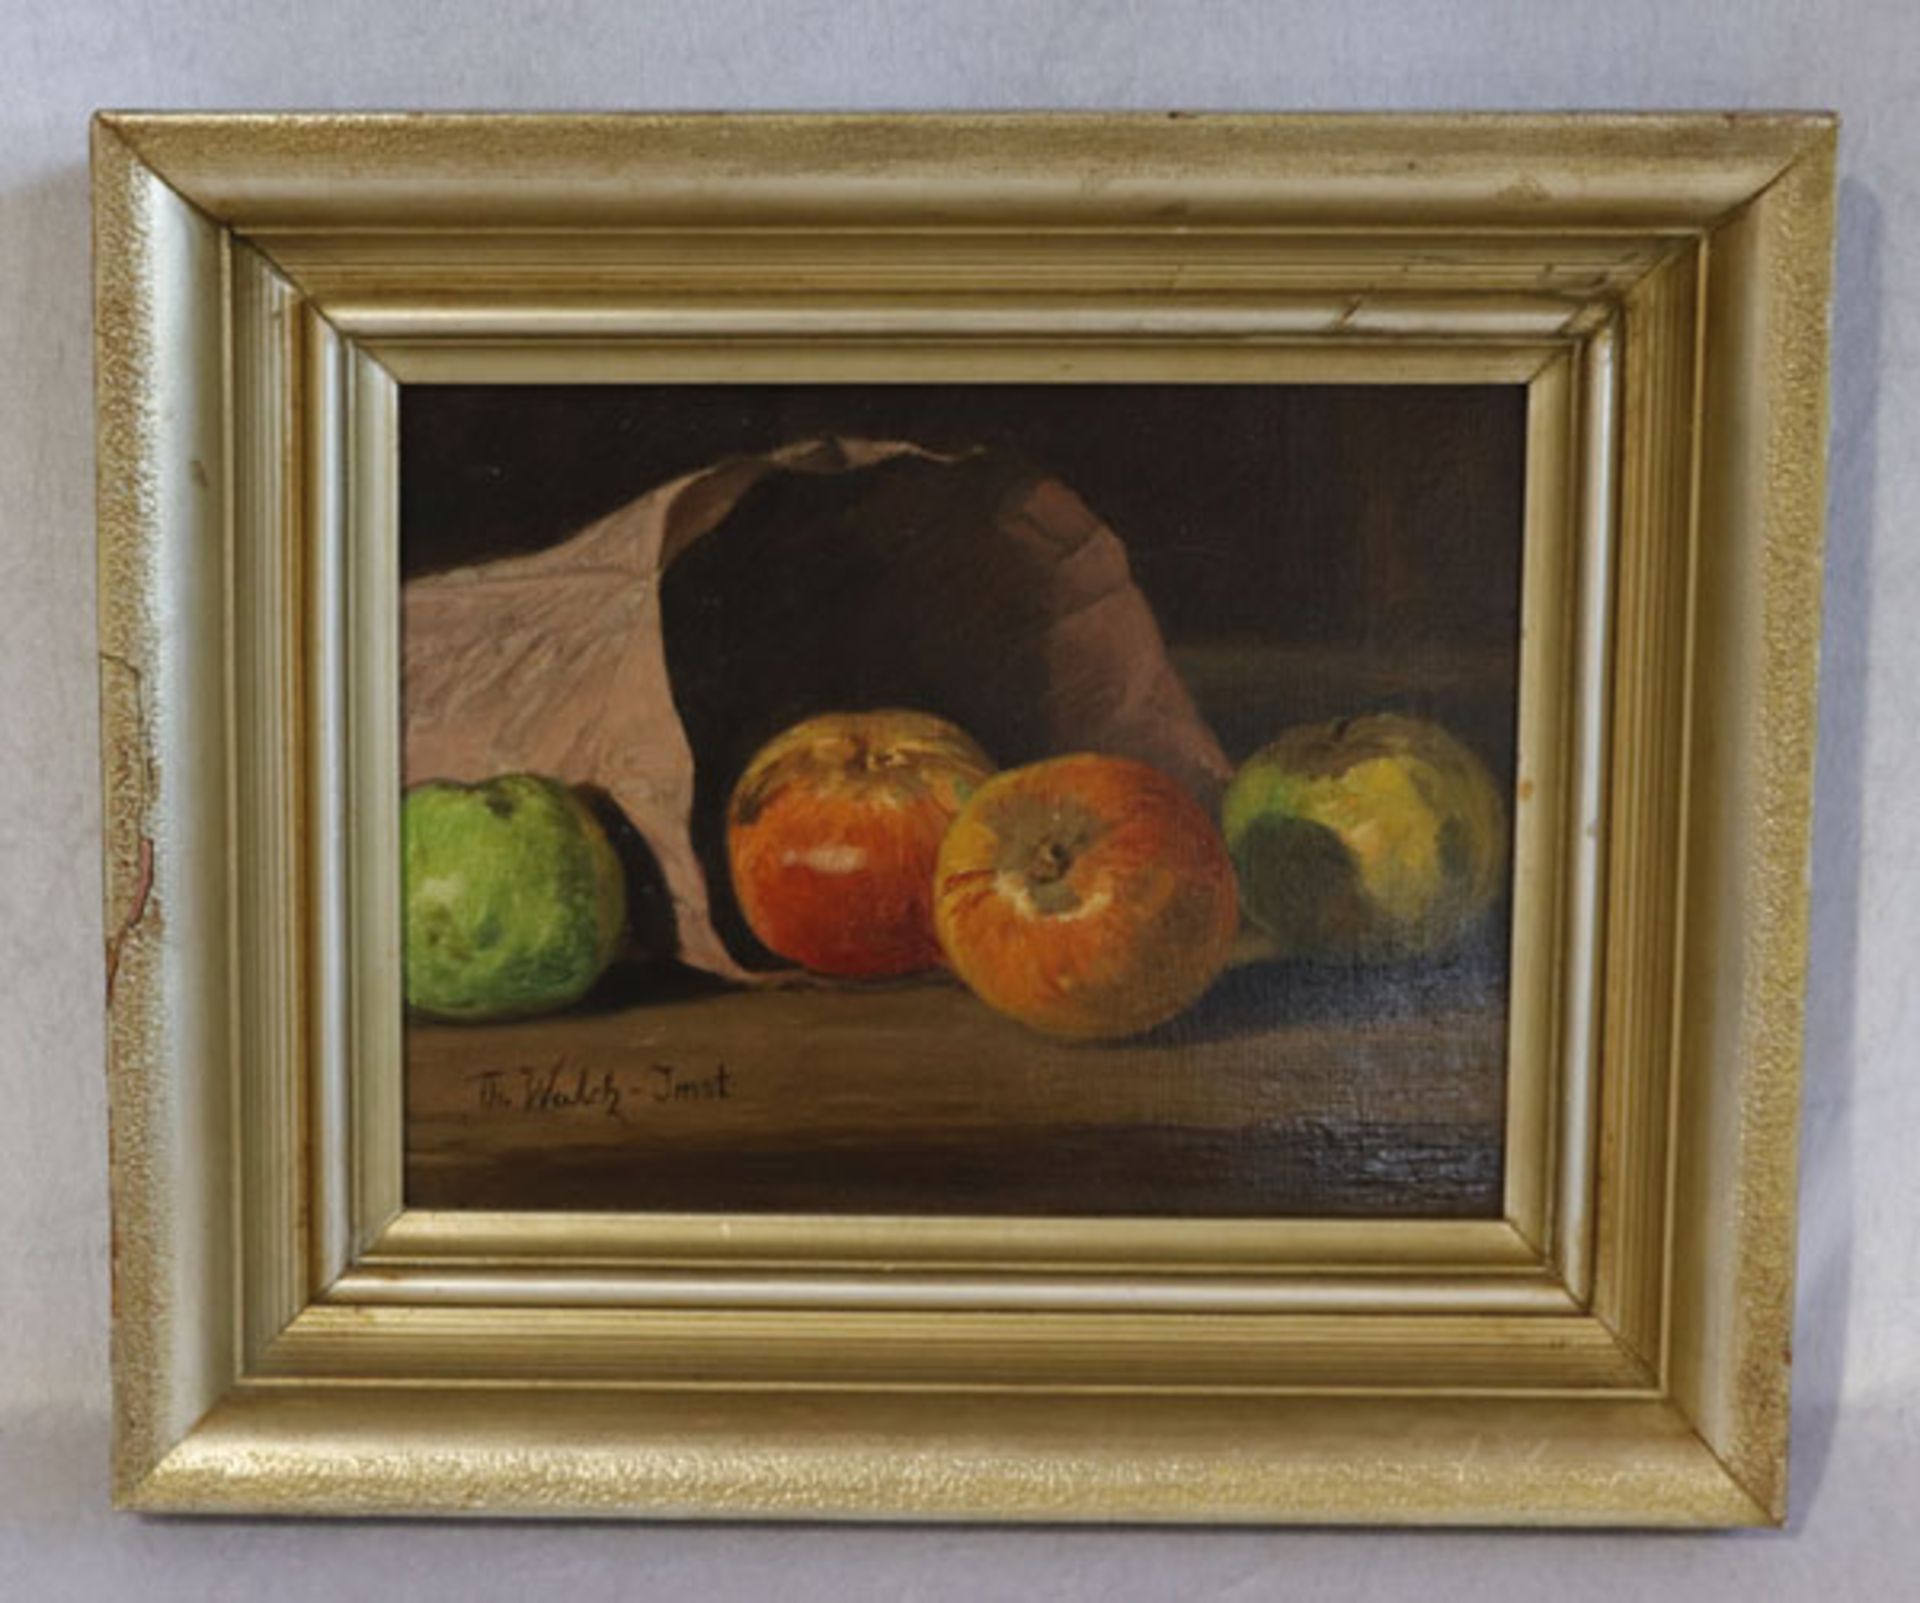 Gemälde ÖL/LW 'Obststillleben', signiert Th. (Thomas) Walch - Imst, * 1867 Imst + 1943, mit